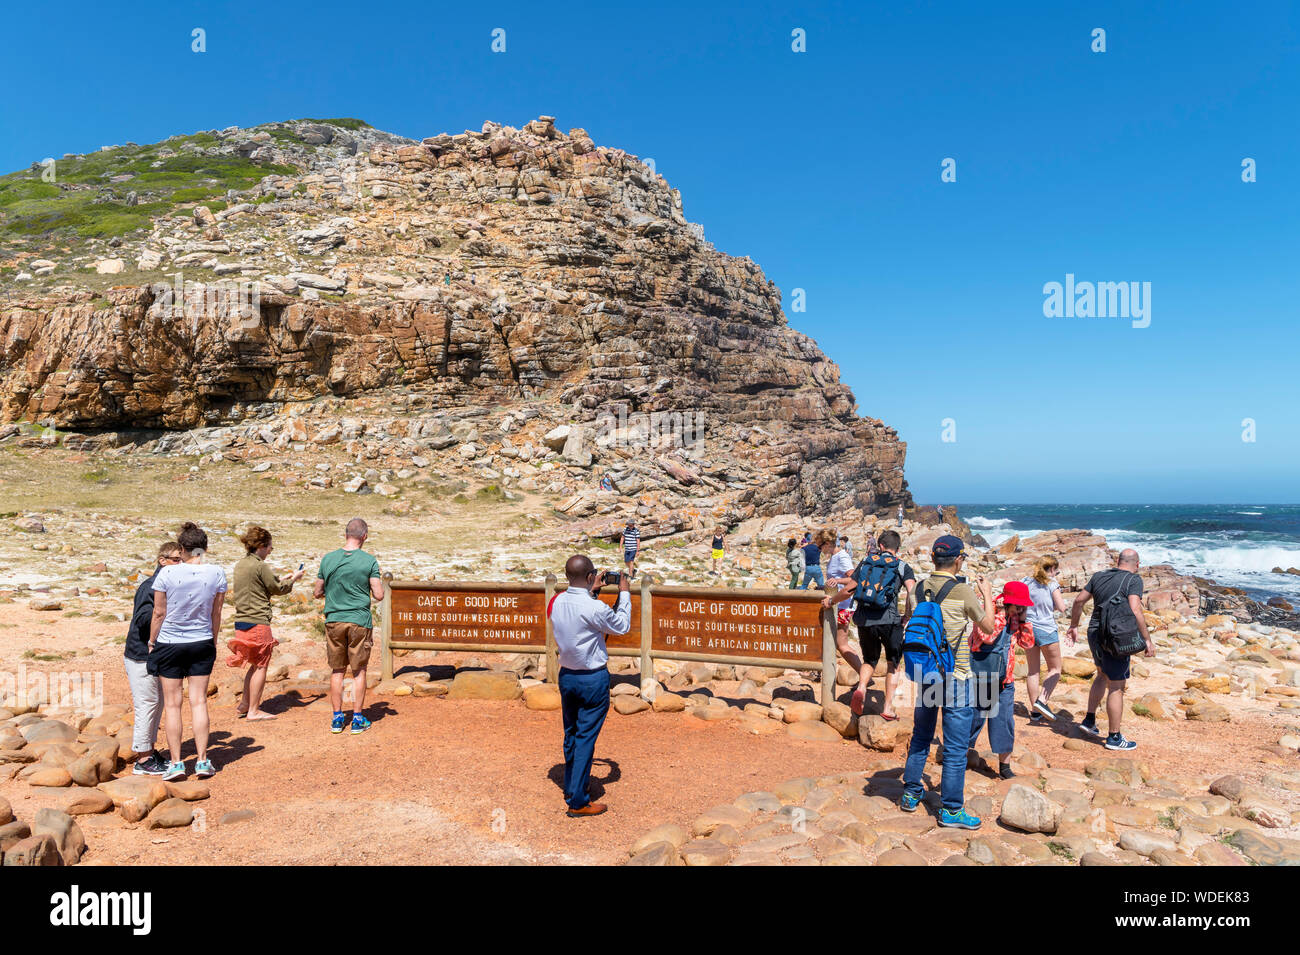 Touristen am Kap der Guten Hoffnung, die am südwestlichen Punkt auf dem afrikanischen Kontinent, Western Cape, Südafrika Stockfoto